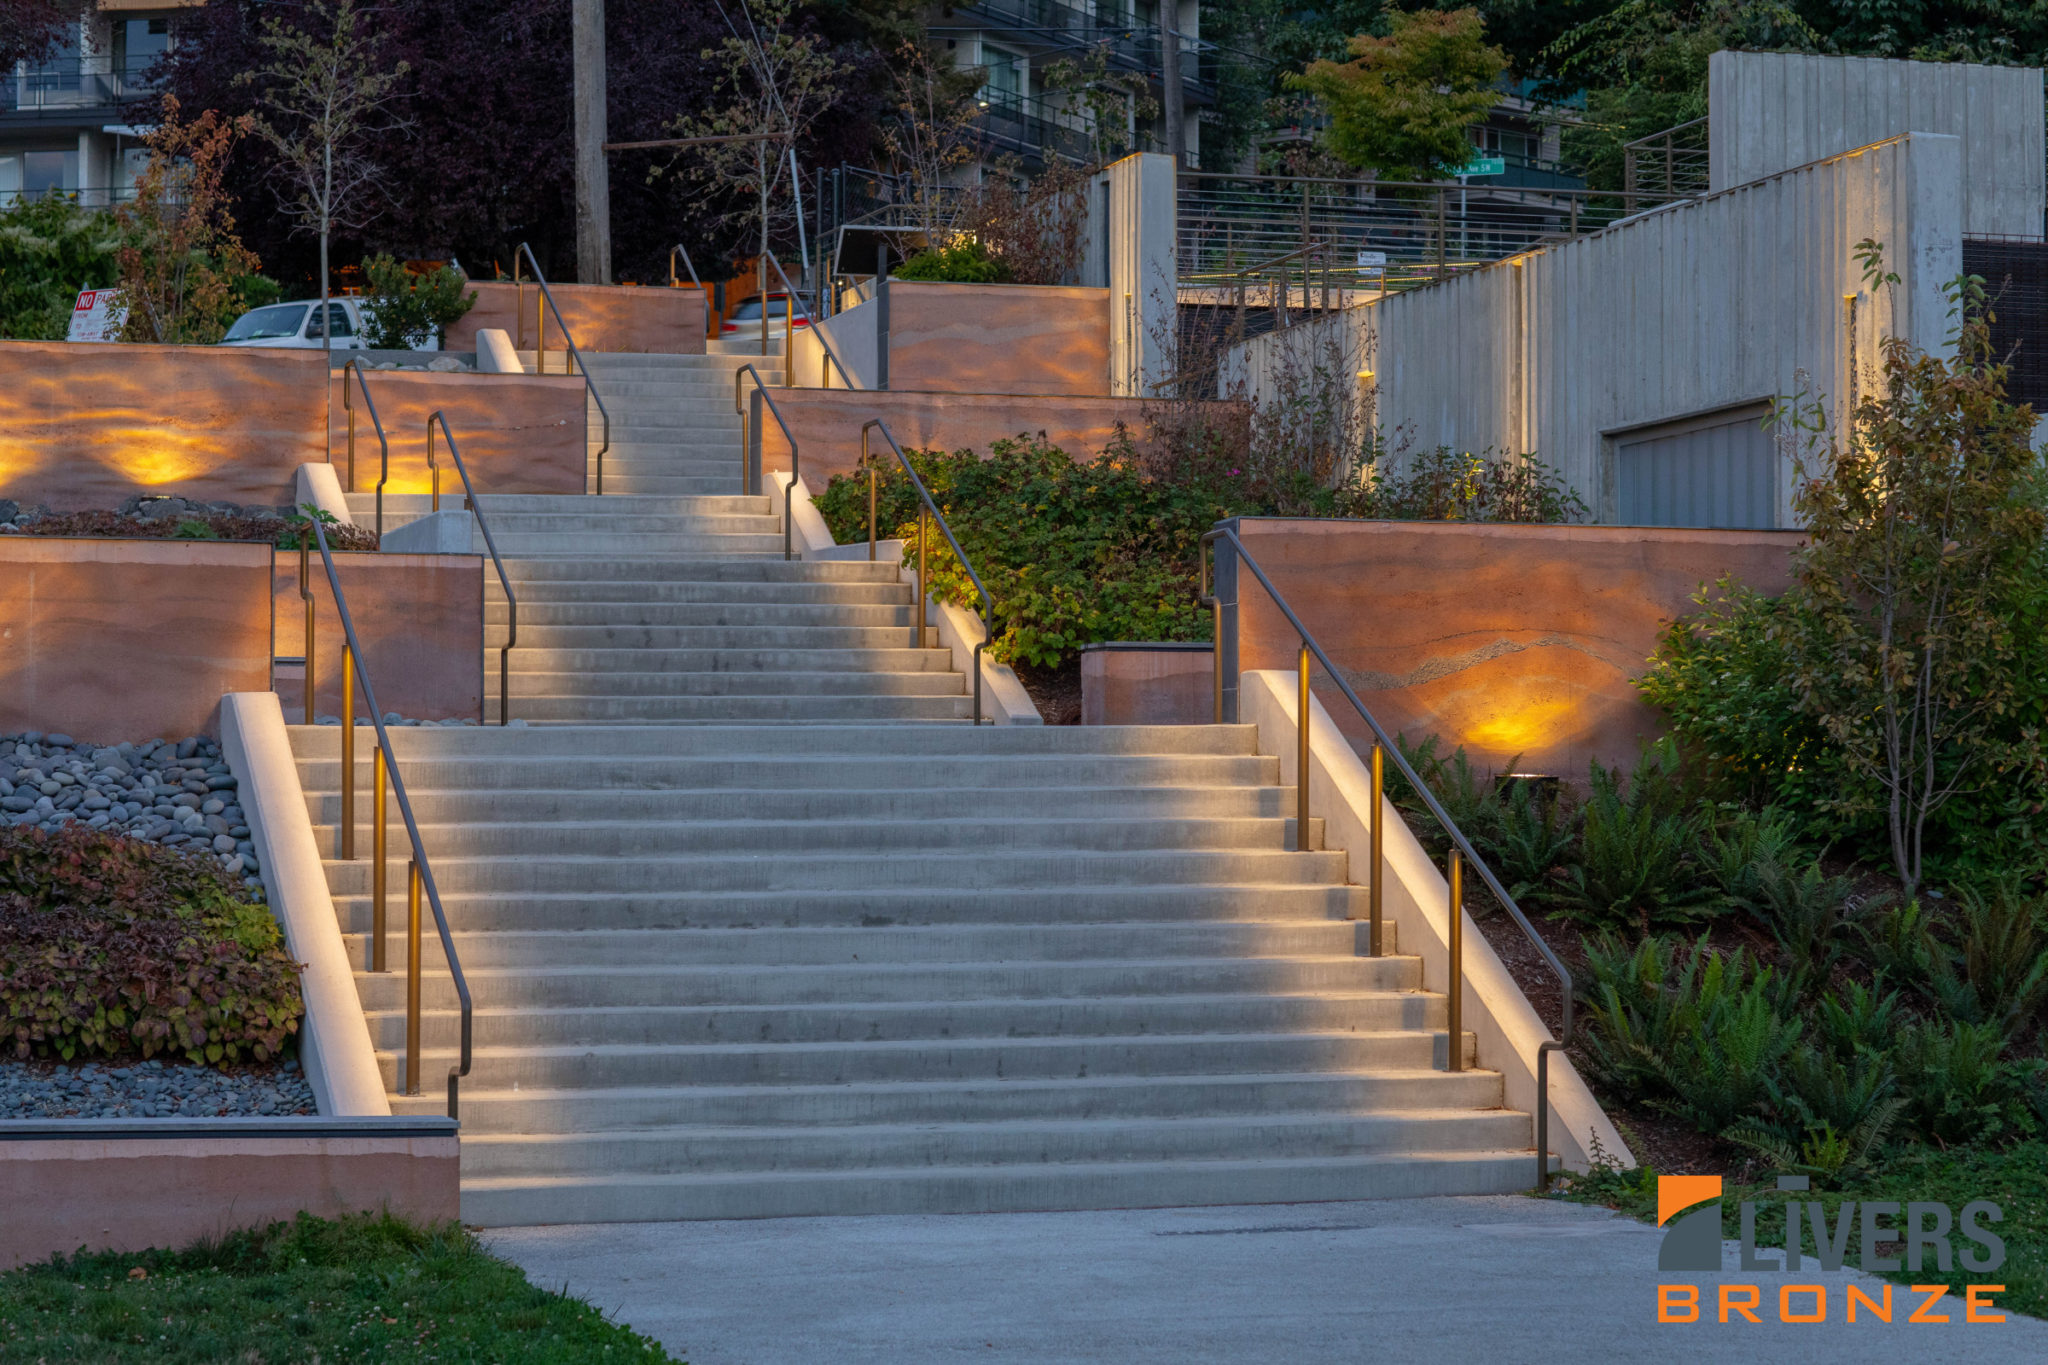 LED illuminated handrail